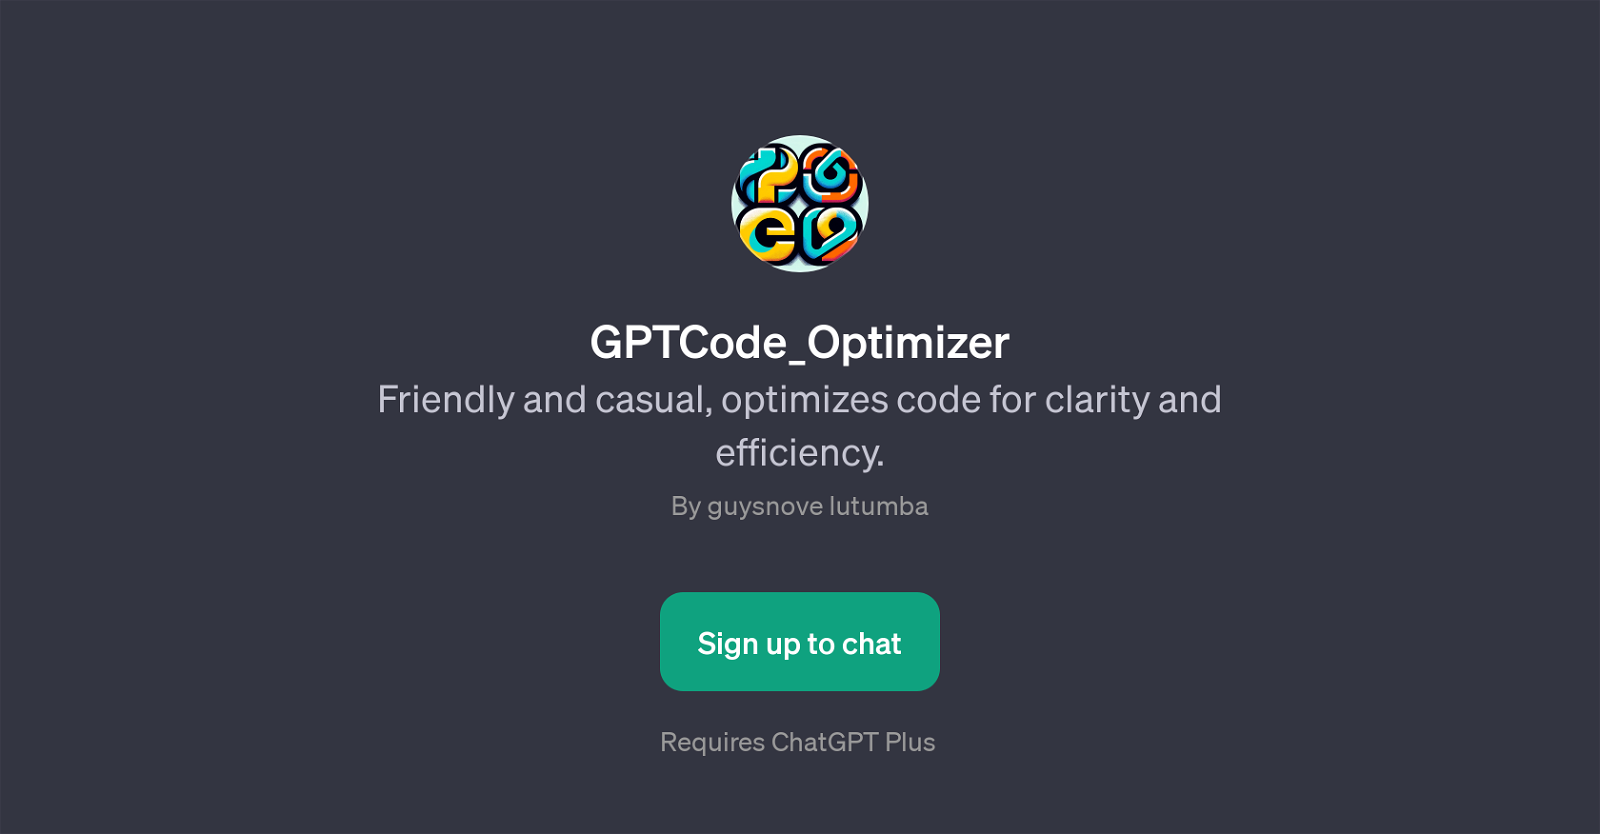 GPTCode_Optimizer website